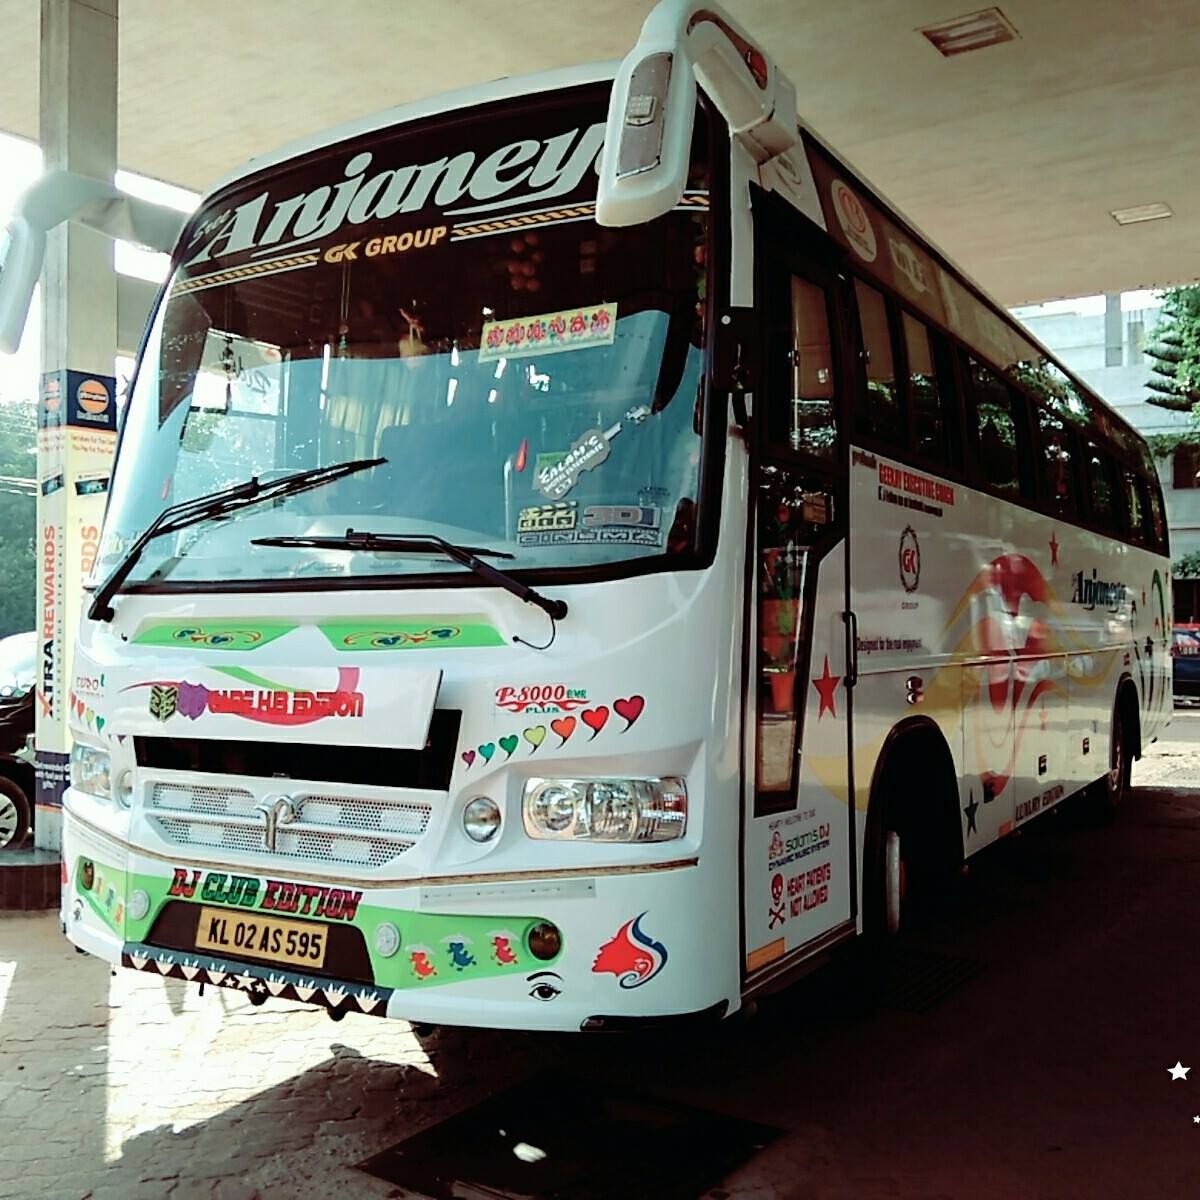 Shri Aanjaneya Travels - Bus Tickets Online Booking | Schedule ...